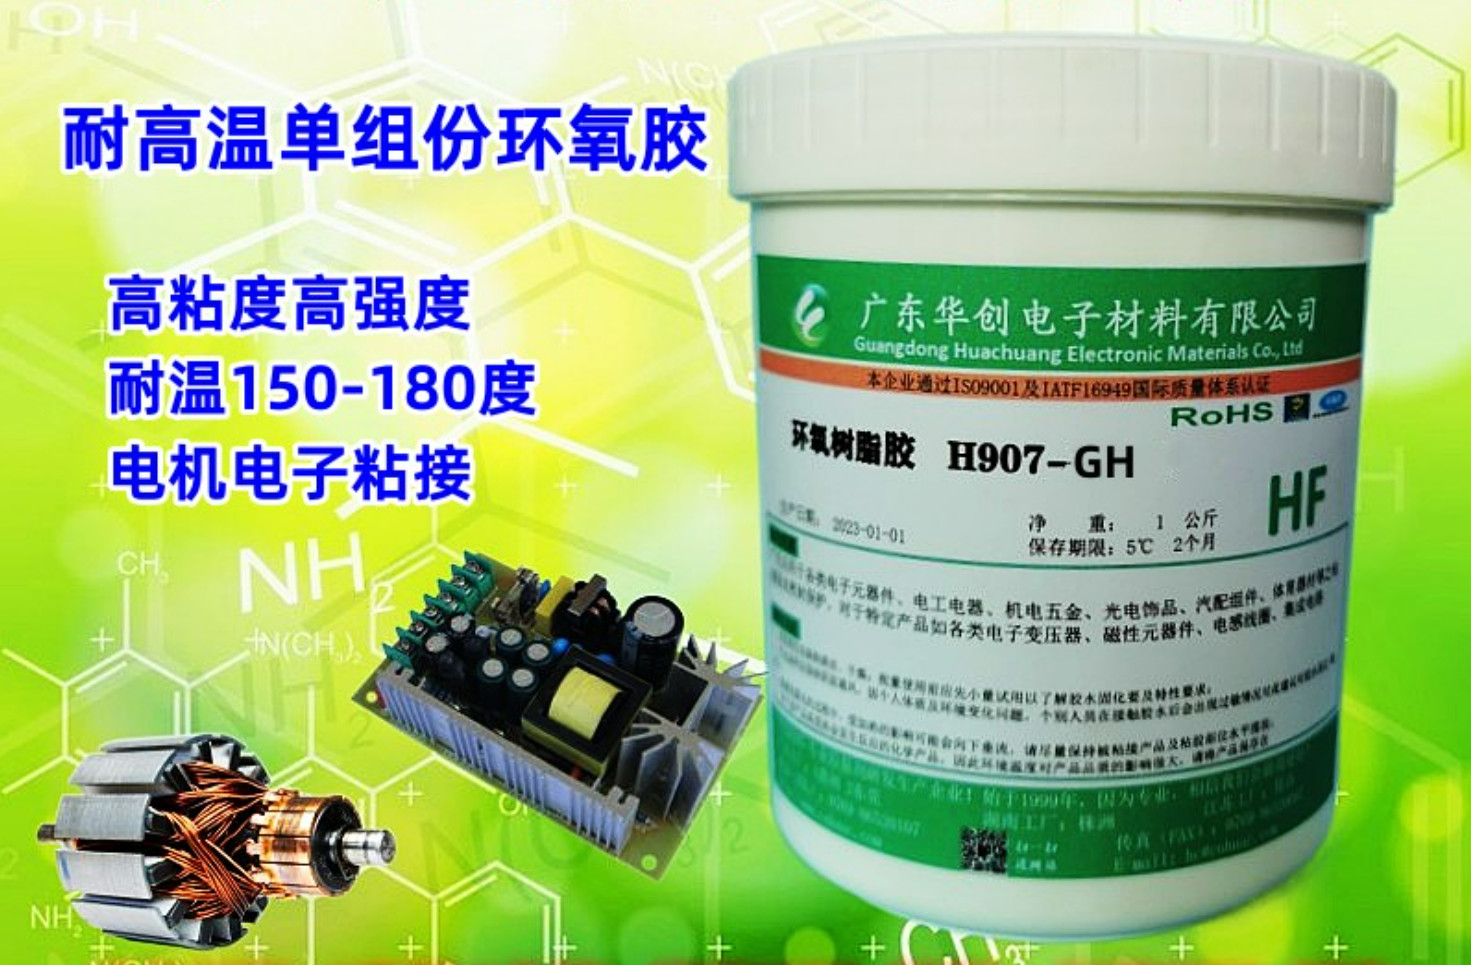 H907-GH 耐高温粘接胶 结构胶 单组份热固化环氧树脂胶 200度耐温